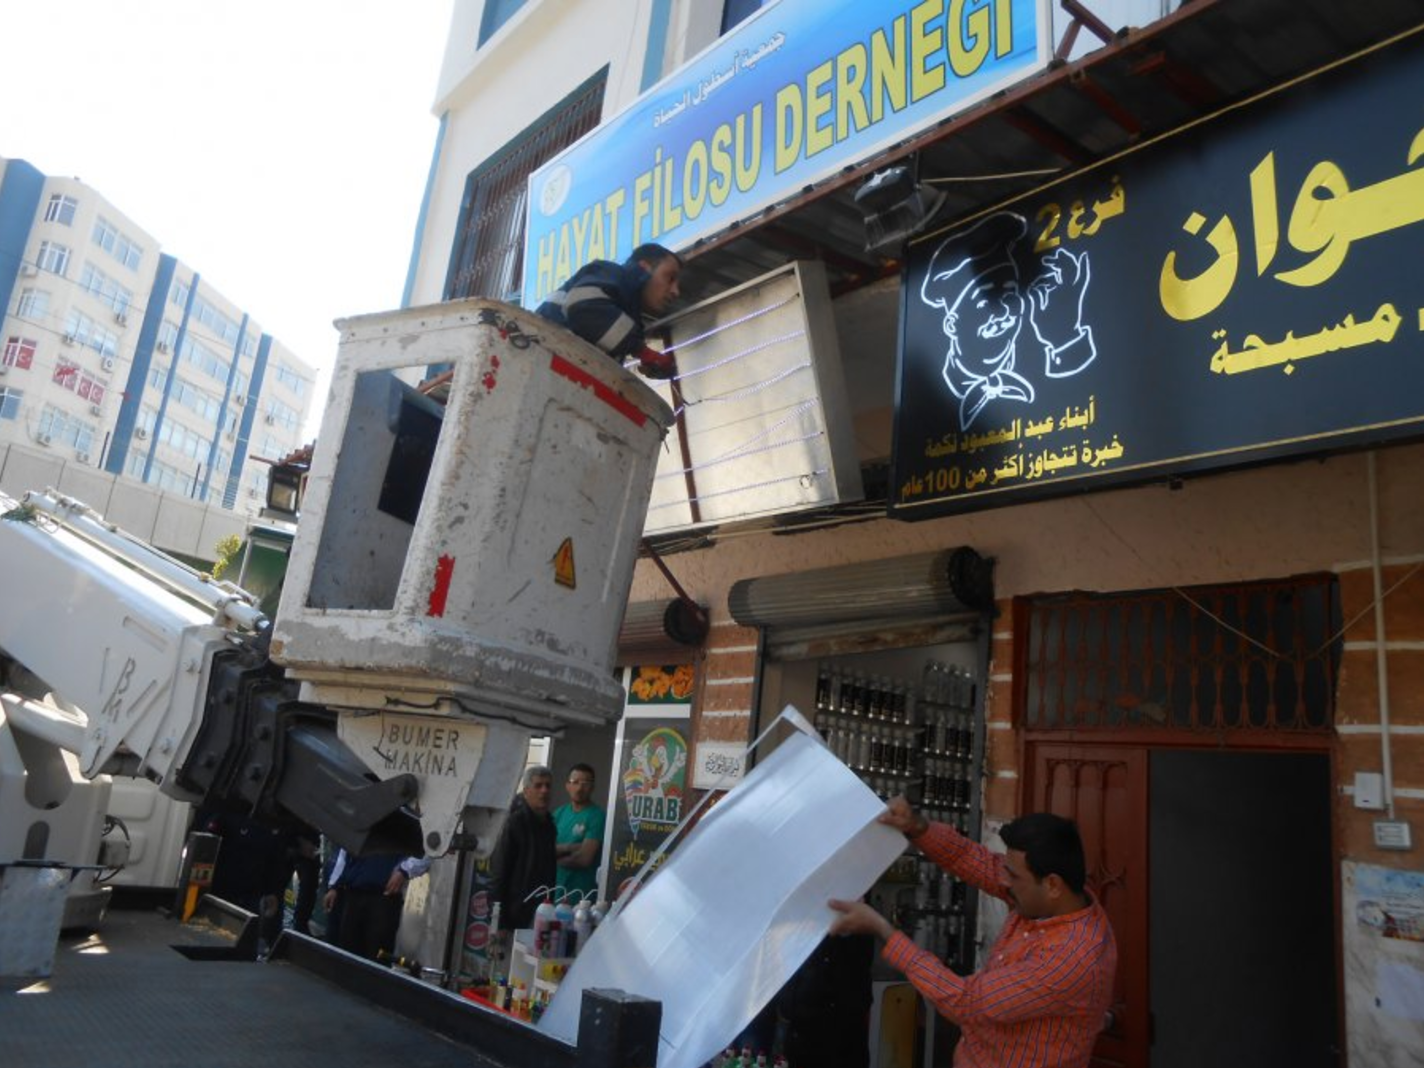 بلدية أضنة تزيل لافتات المحال التجارية المكتوبة باللغة العربية، 26 نيسان 2017 (موقع البلدية)